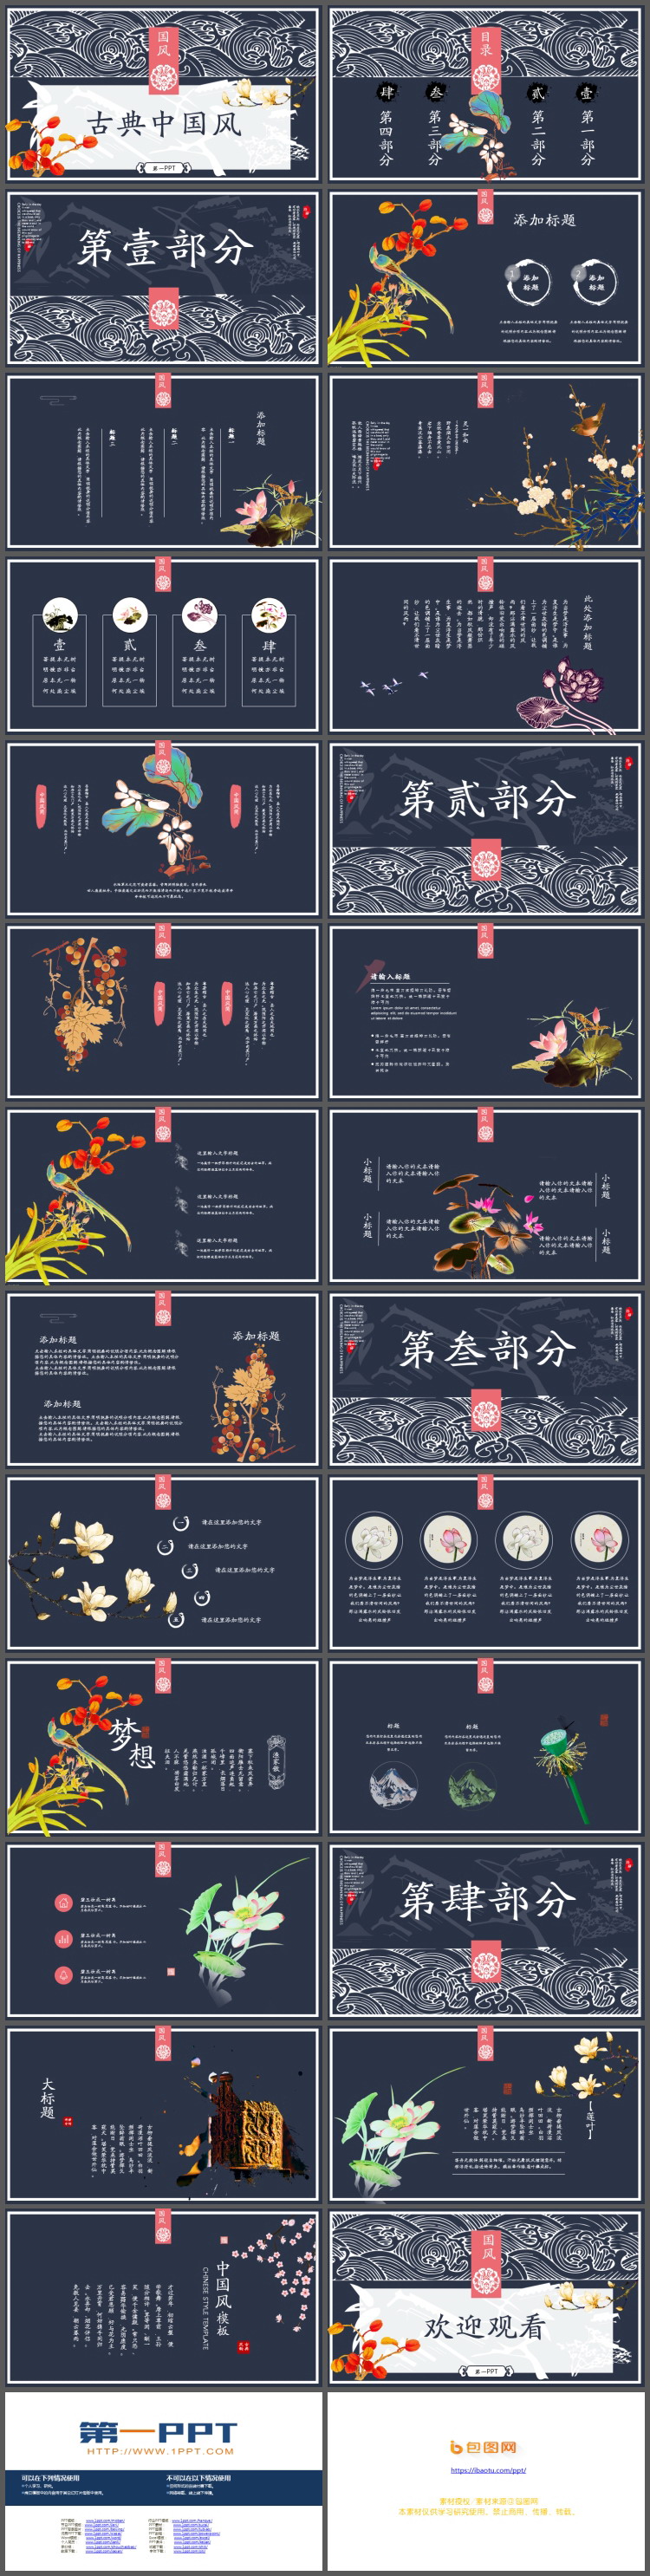 精美古典花纹背景的中国风PPT模板免费下载